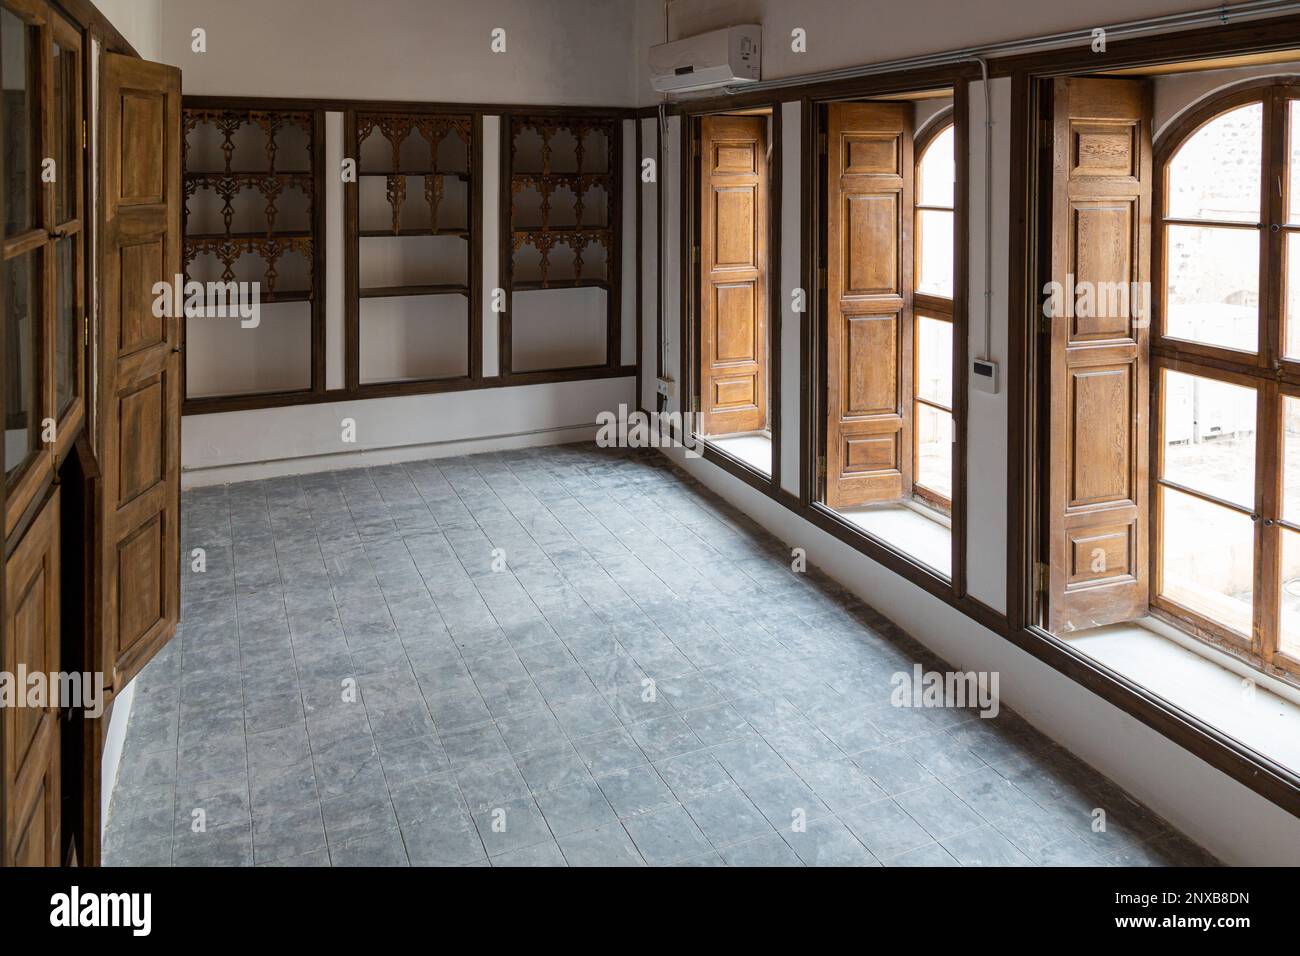 Vista interna di una tradizionale casa Kilis a Kilis, Turchia. Finestre in legno e scaffali a muro in una sala della storica Islam Bey Mansion. Foto Stock